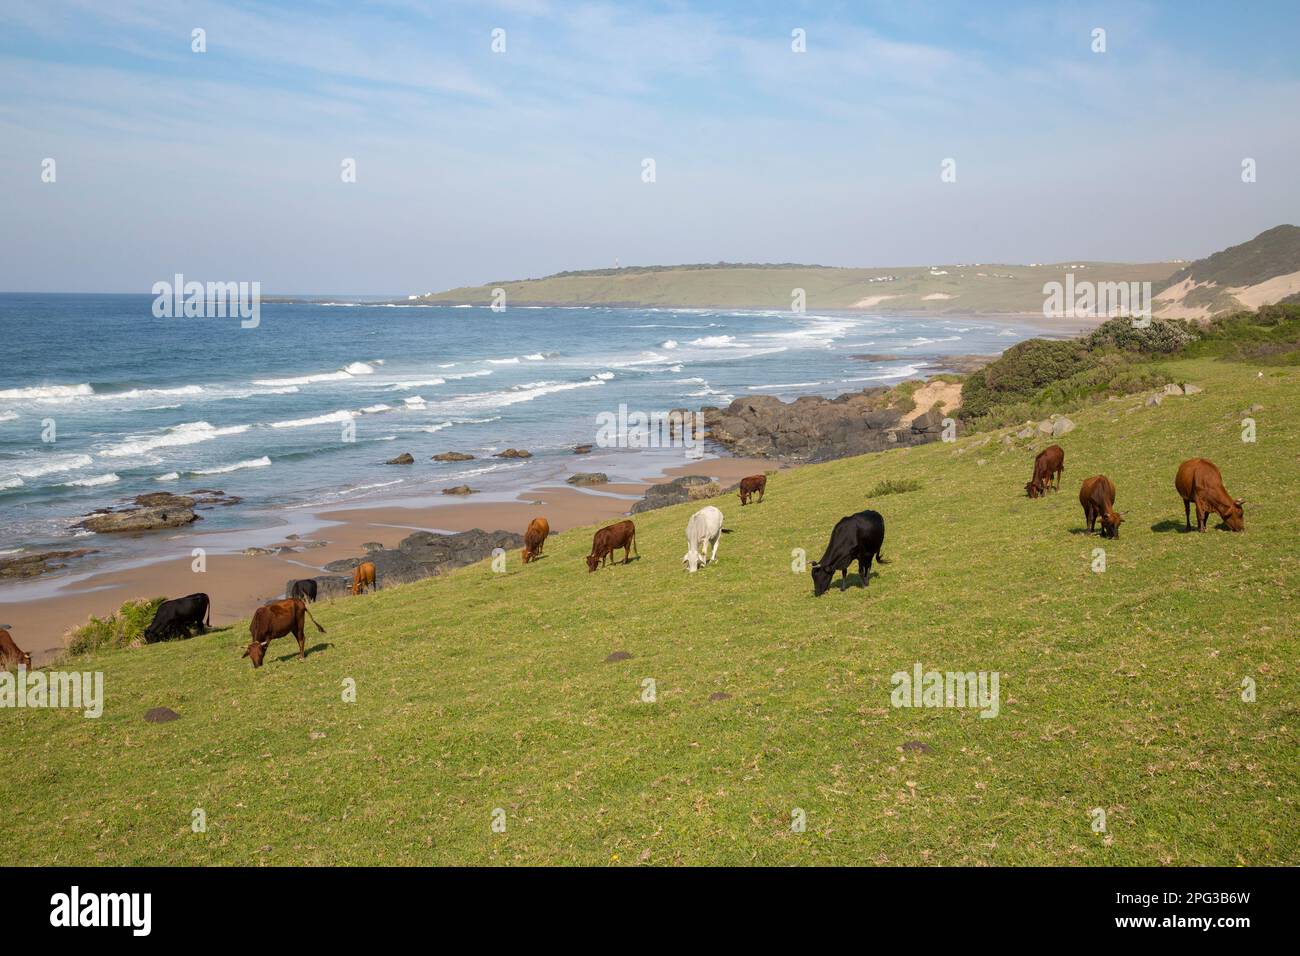 Viehherde, die an den grasbedeckten Hängen an der wilden Küste von Transkei mit Blick auf das Meer grast Stockfoto